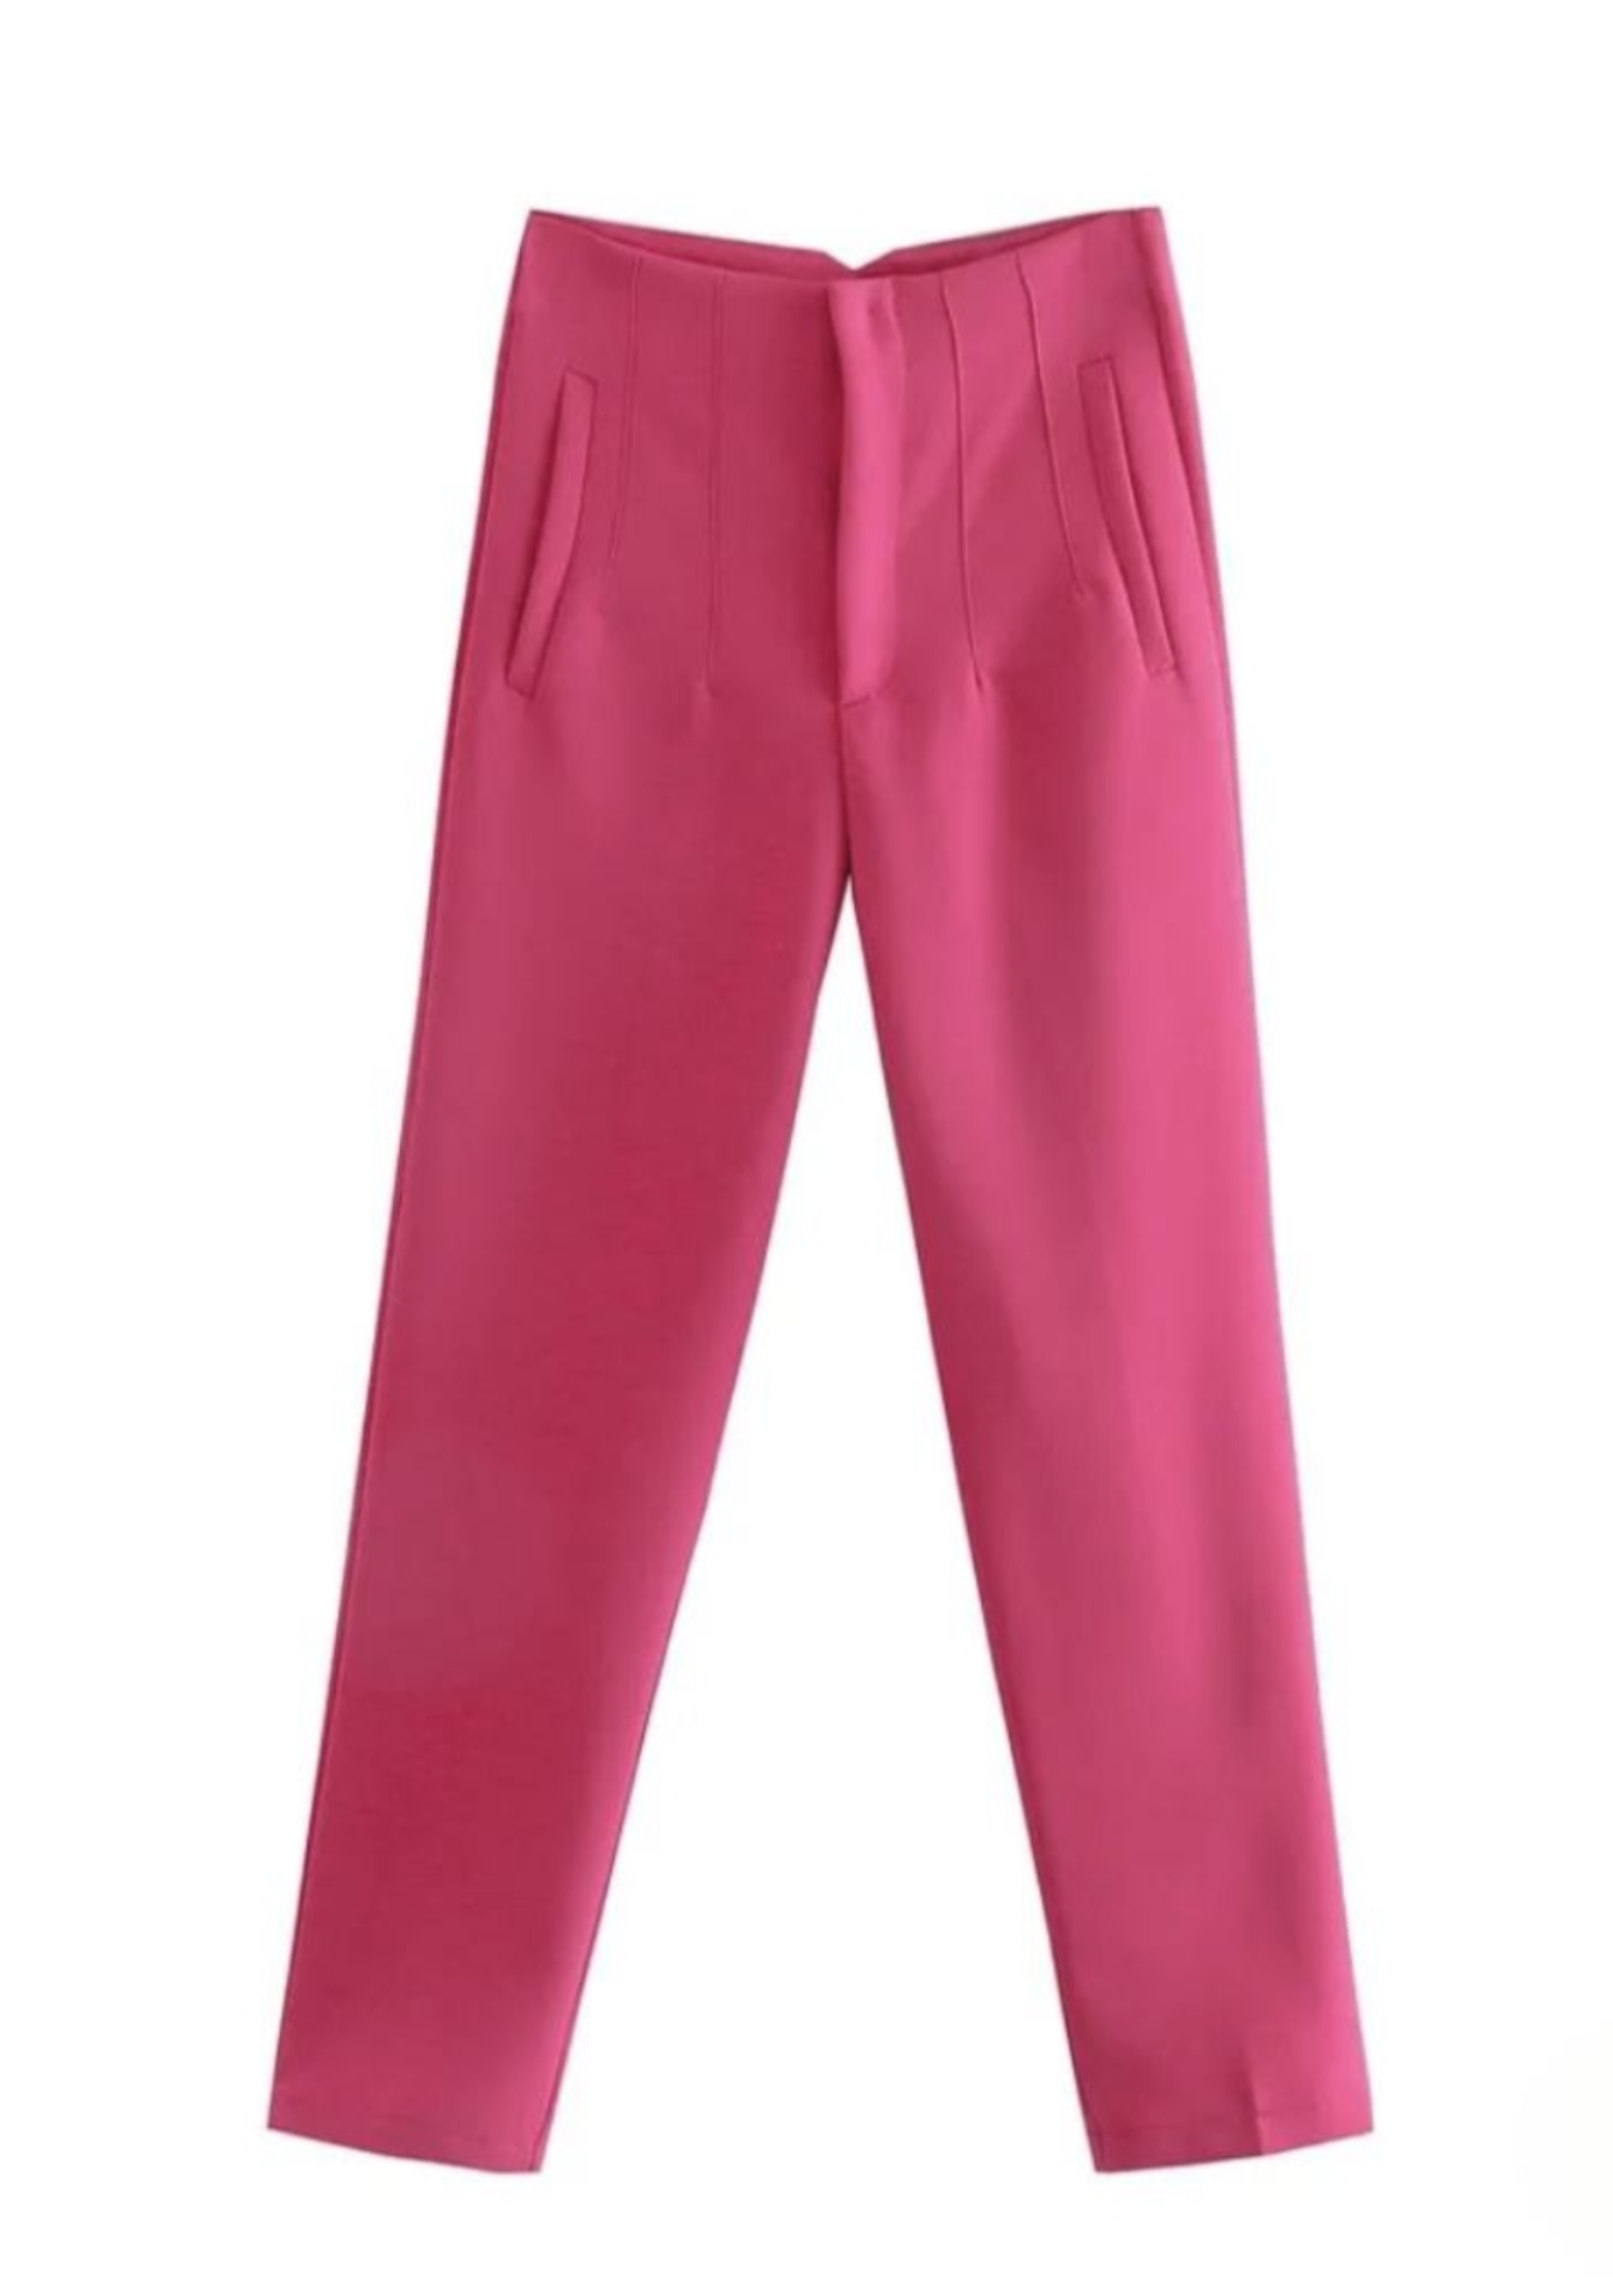 Hot Pink high waisted Women pants